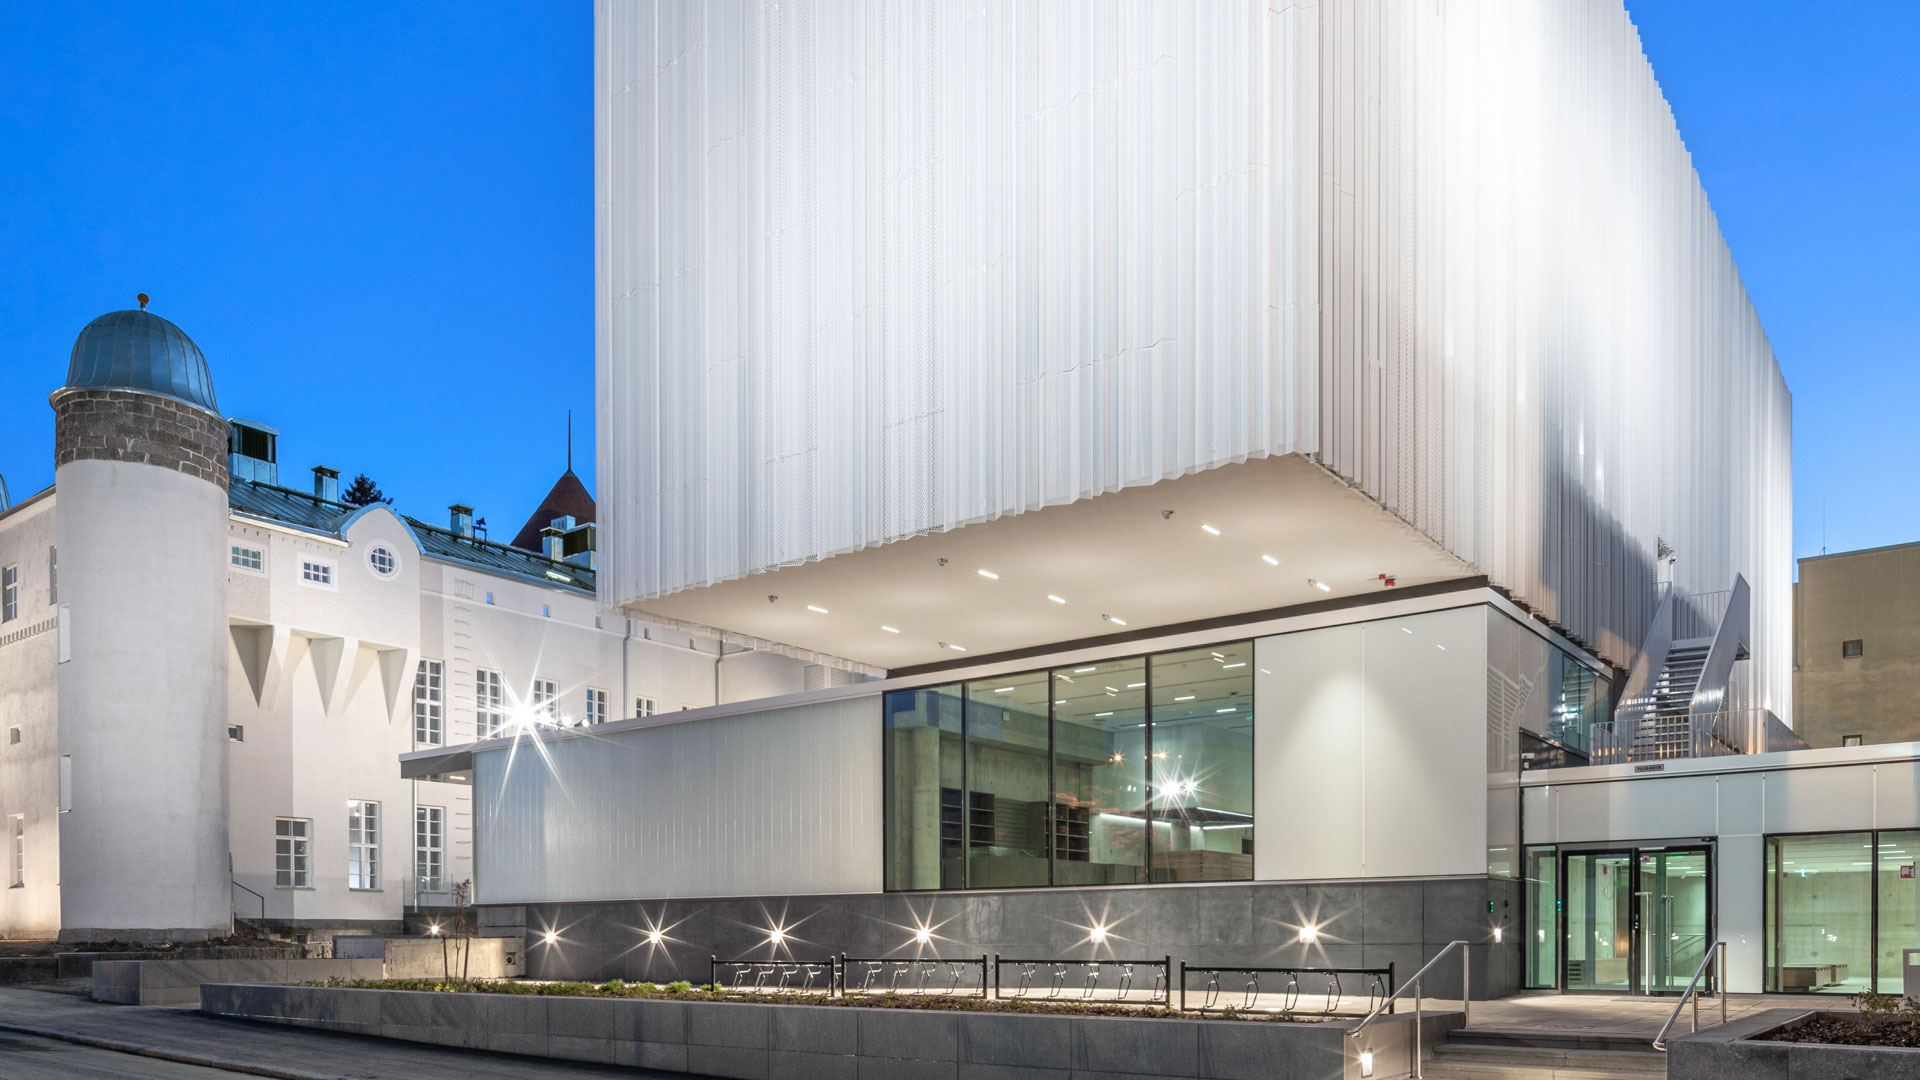 Kuopion uusi museo on Valkoisin pliseerauksin hunnutettu betonilaatikko